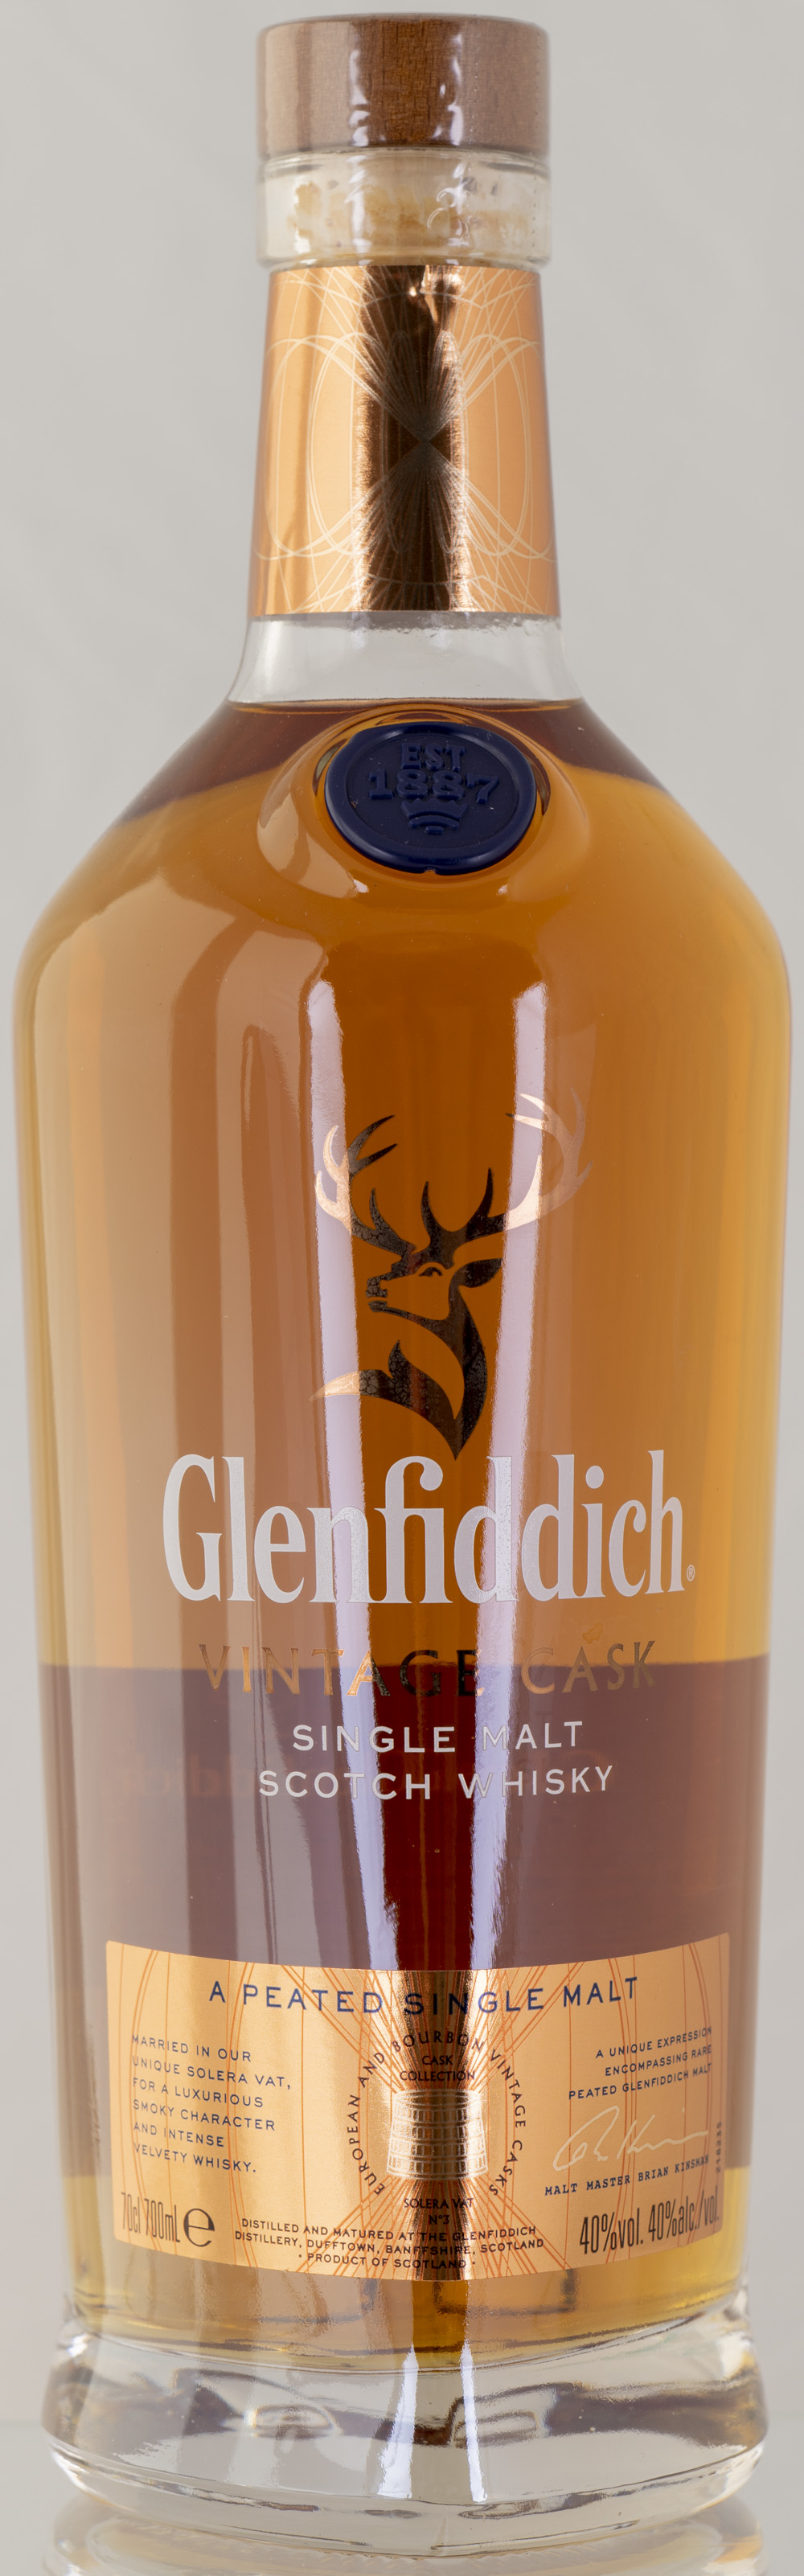 Billede: PHC_2216 - Glenfiddich Vintage Cask Peated - bottle.jpg